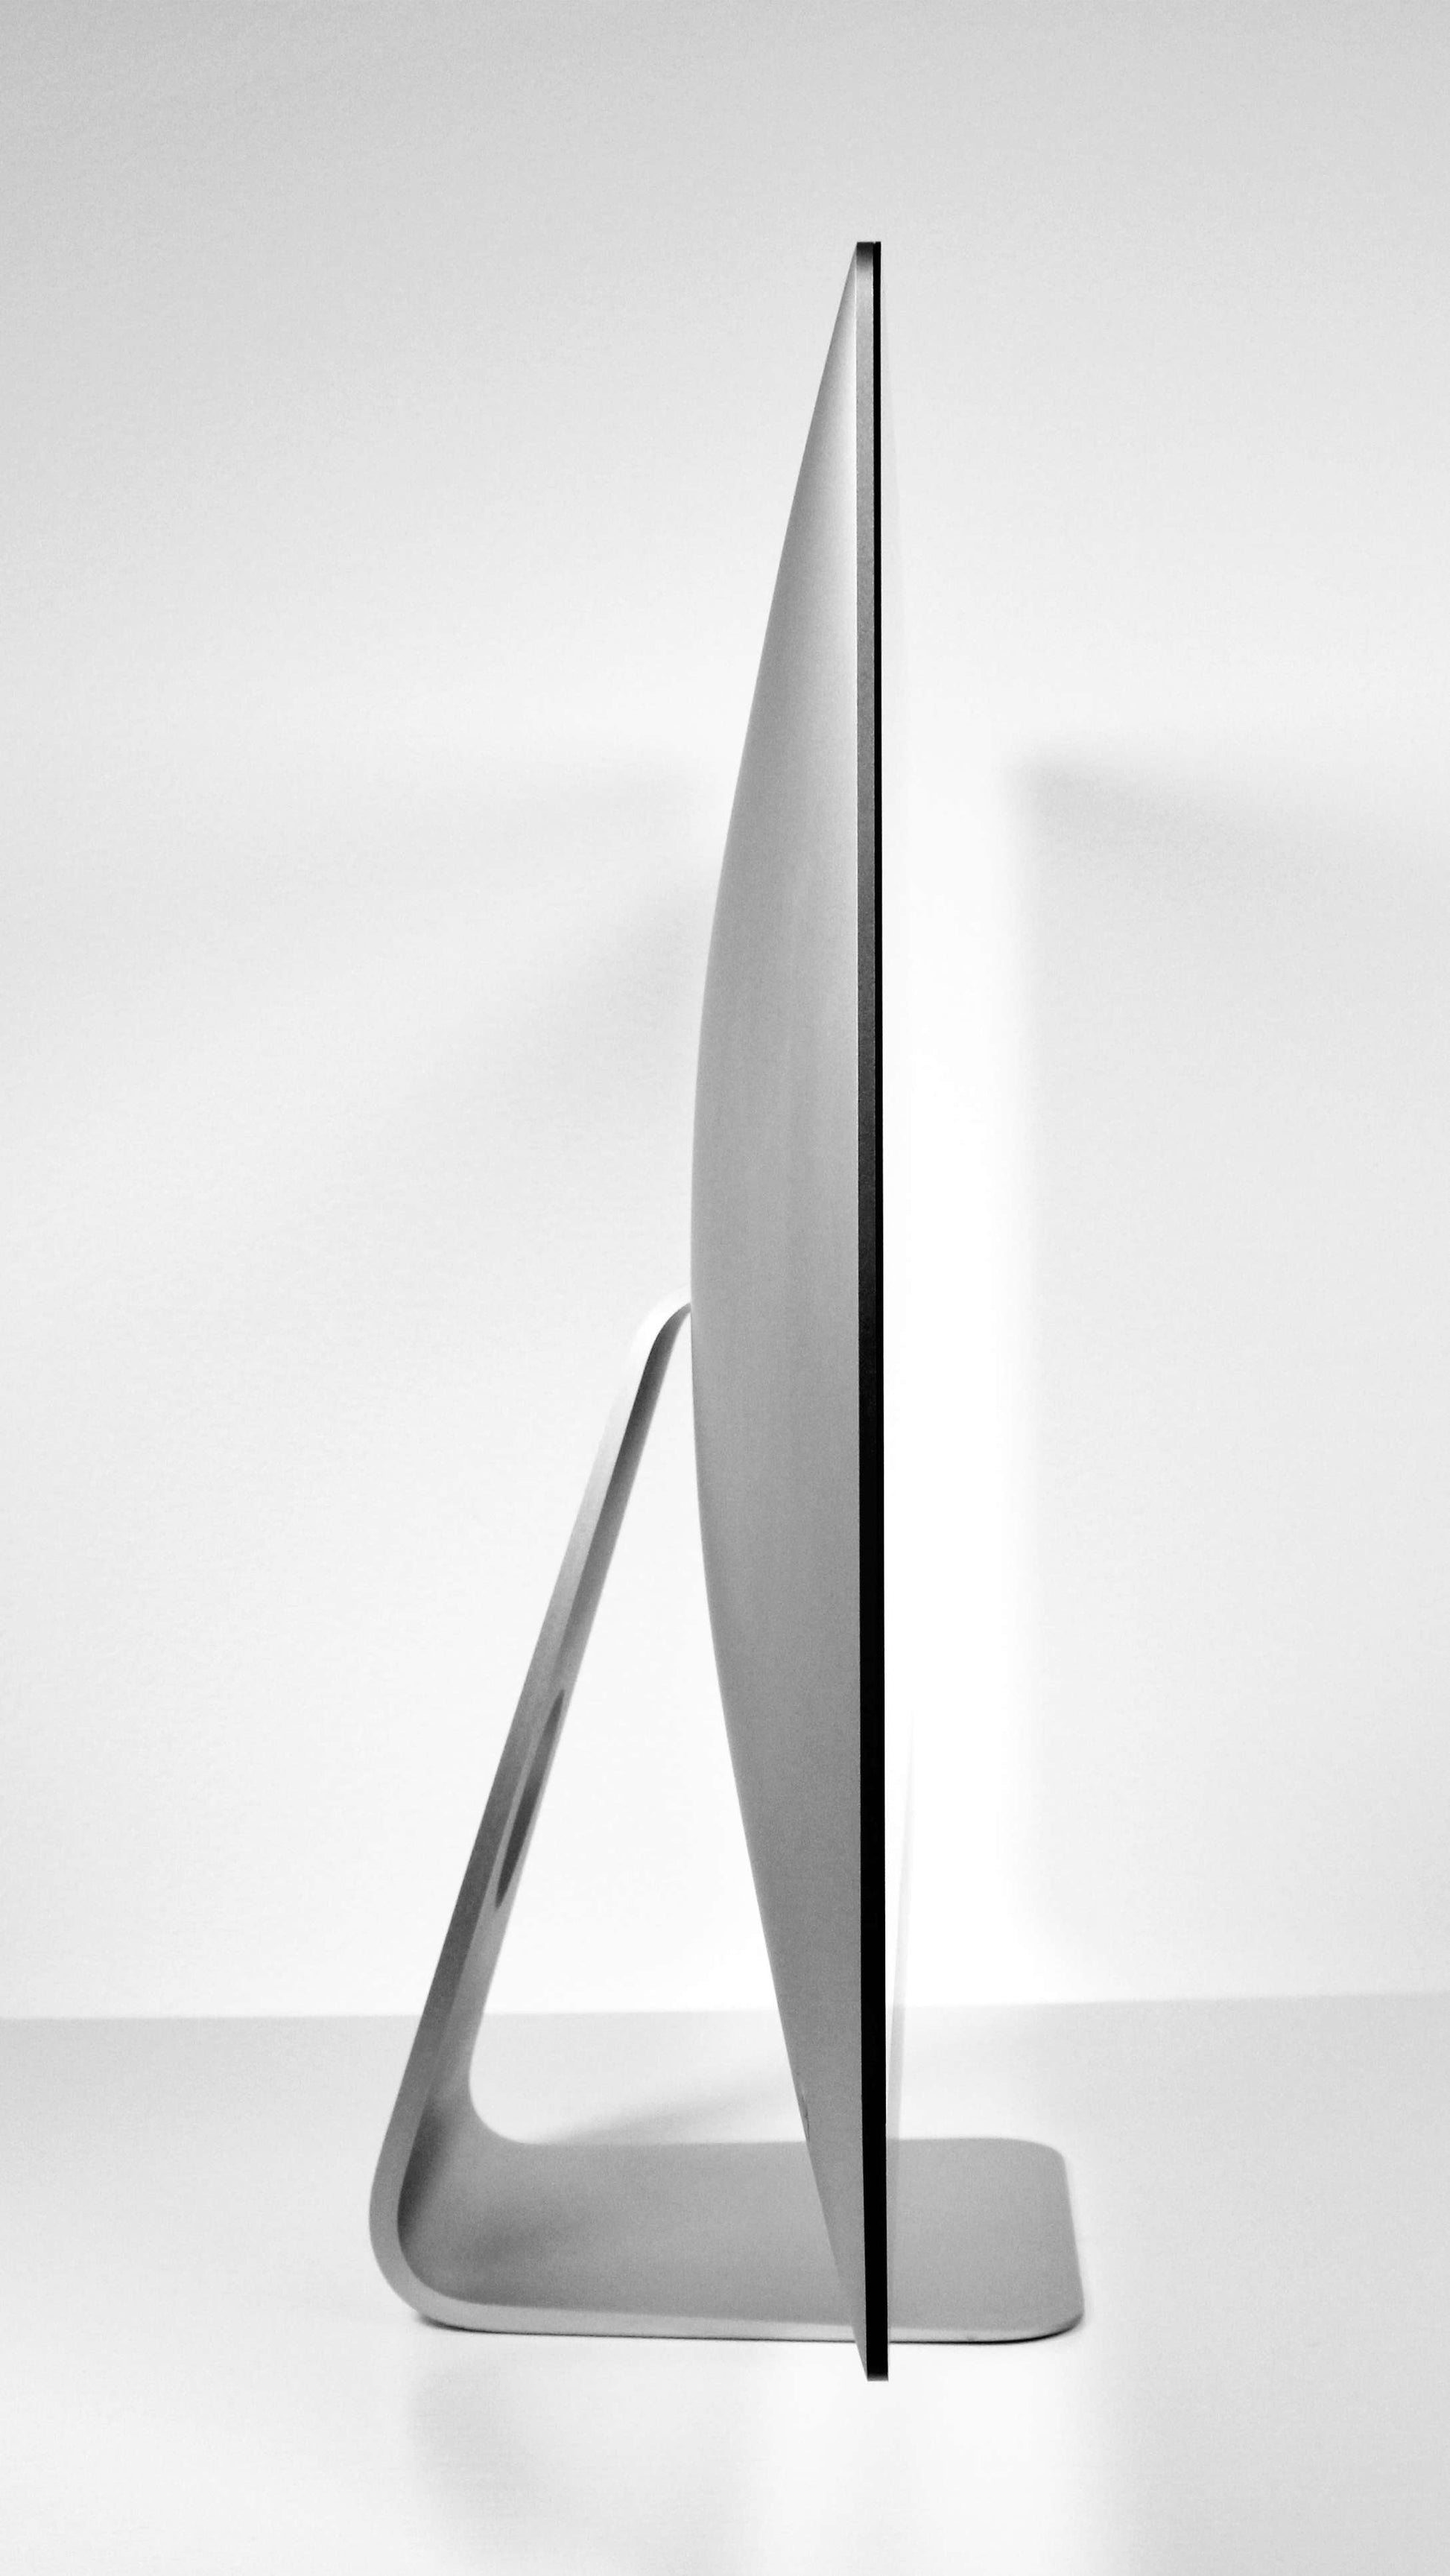 Apple 2019 iMac 5K 27-inch 3.6GHz i9 Desktop Vega 48 GPU